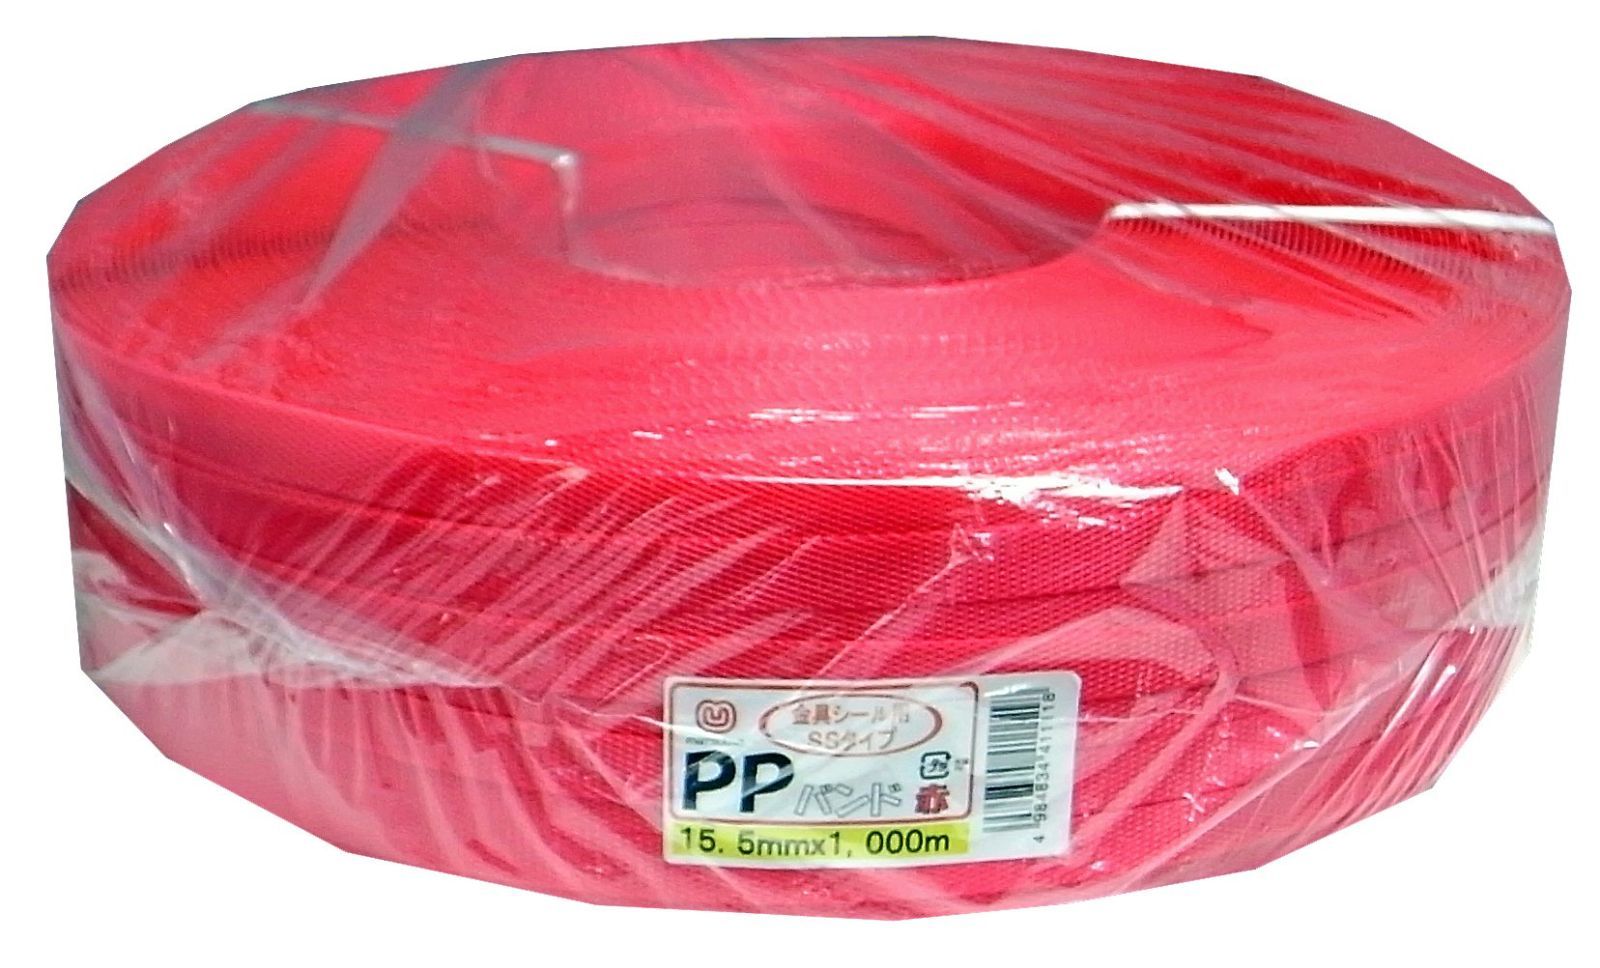 特価商品まつうら工業 梱包手芸用 PPバンド 幅15.5mm 長さ1000m 赤 くらし快適ショップ メルカリ